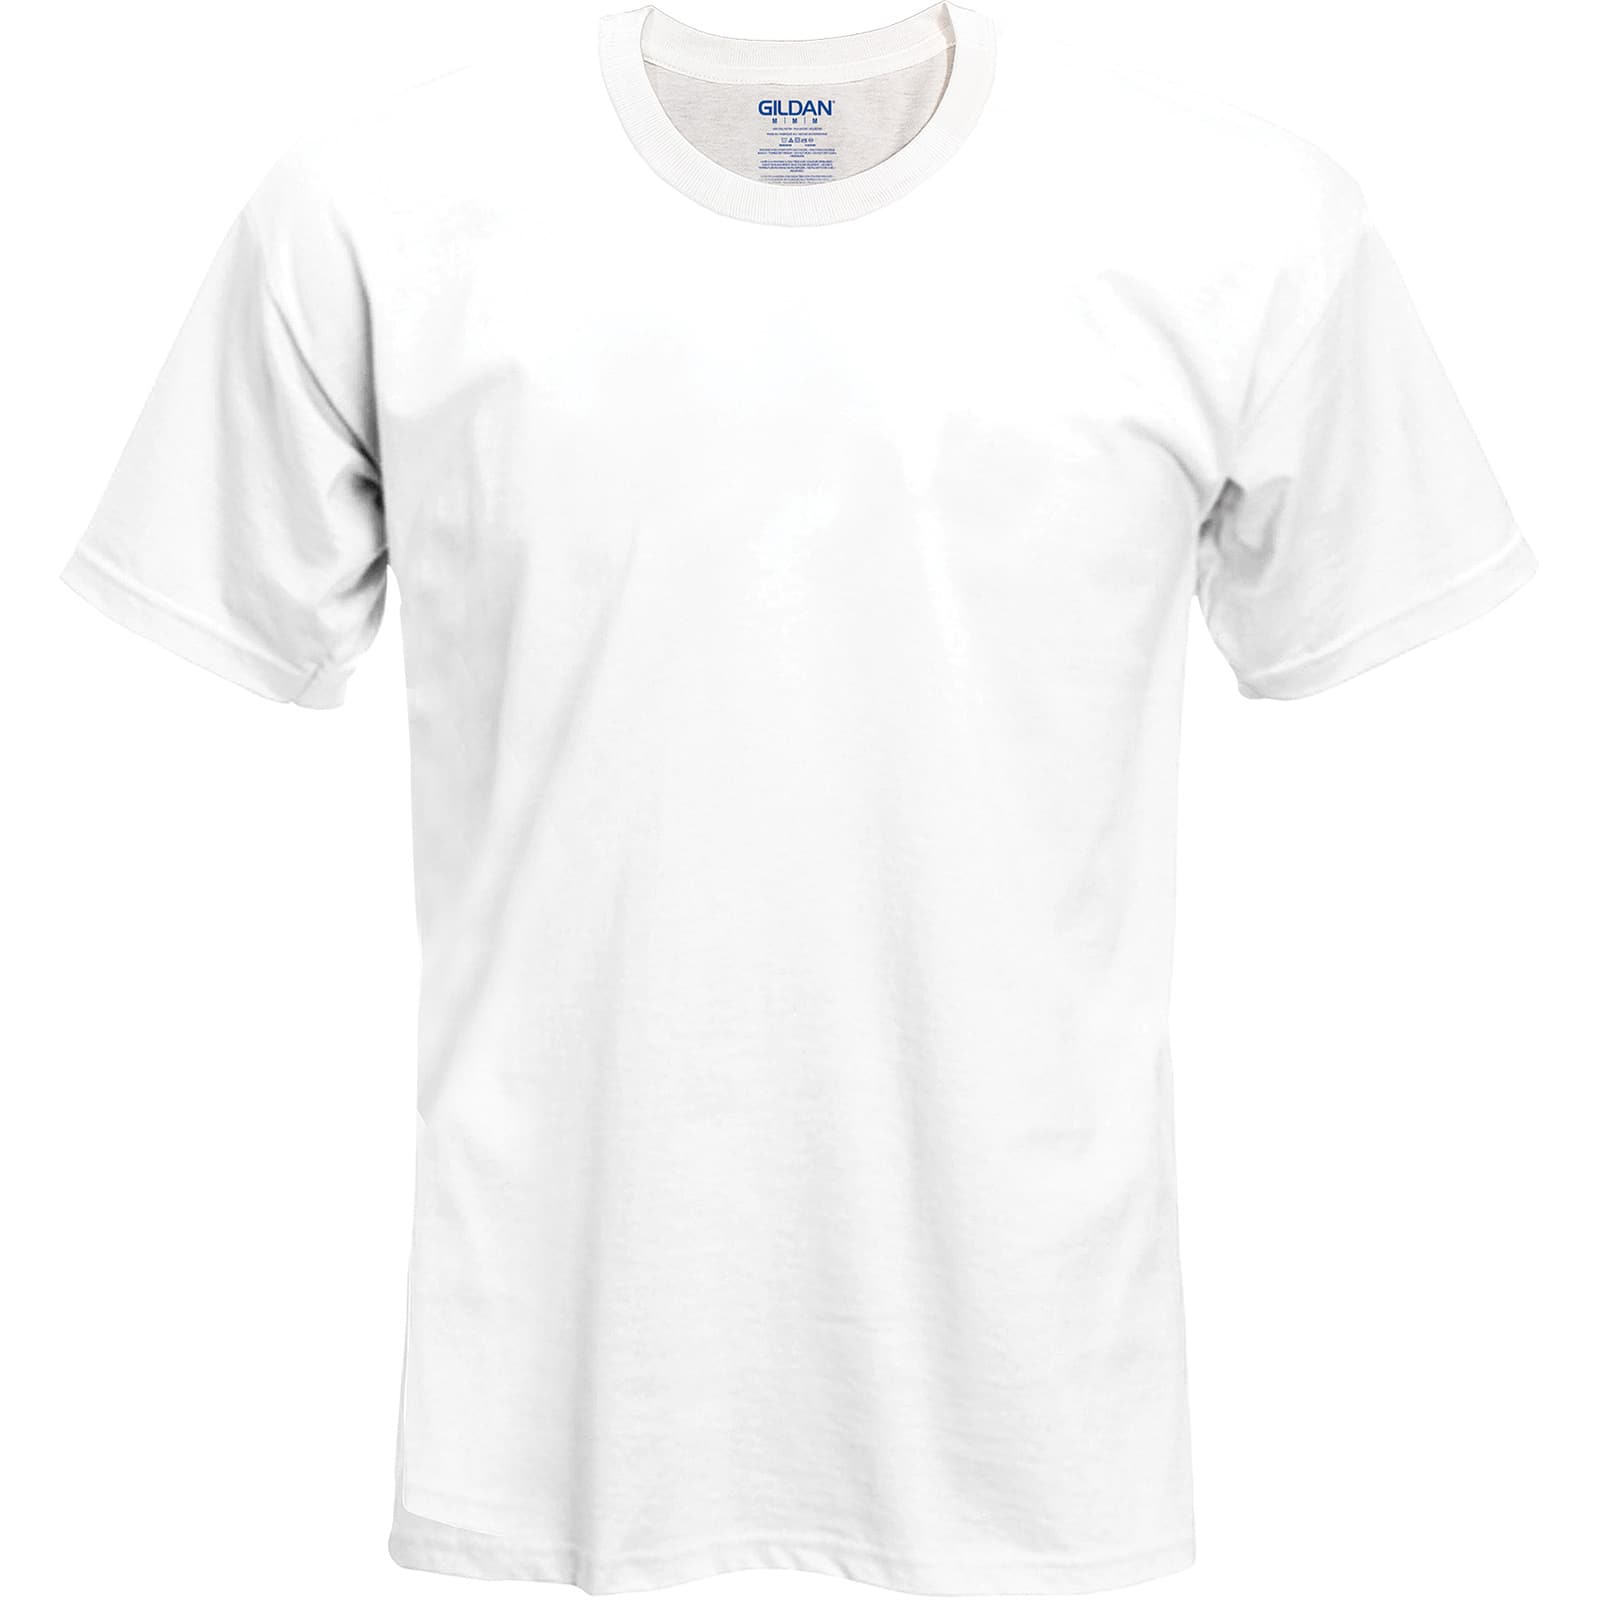 michaels white t shirt